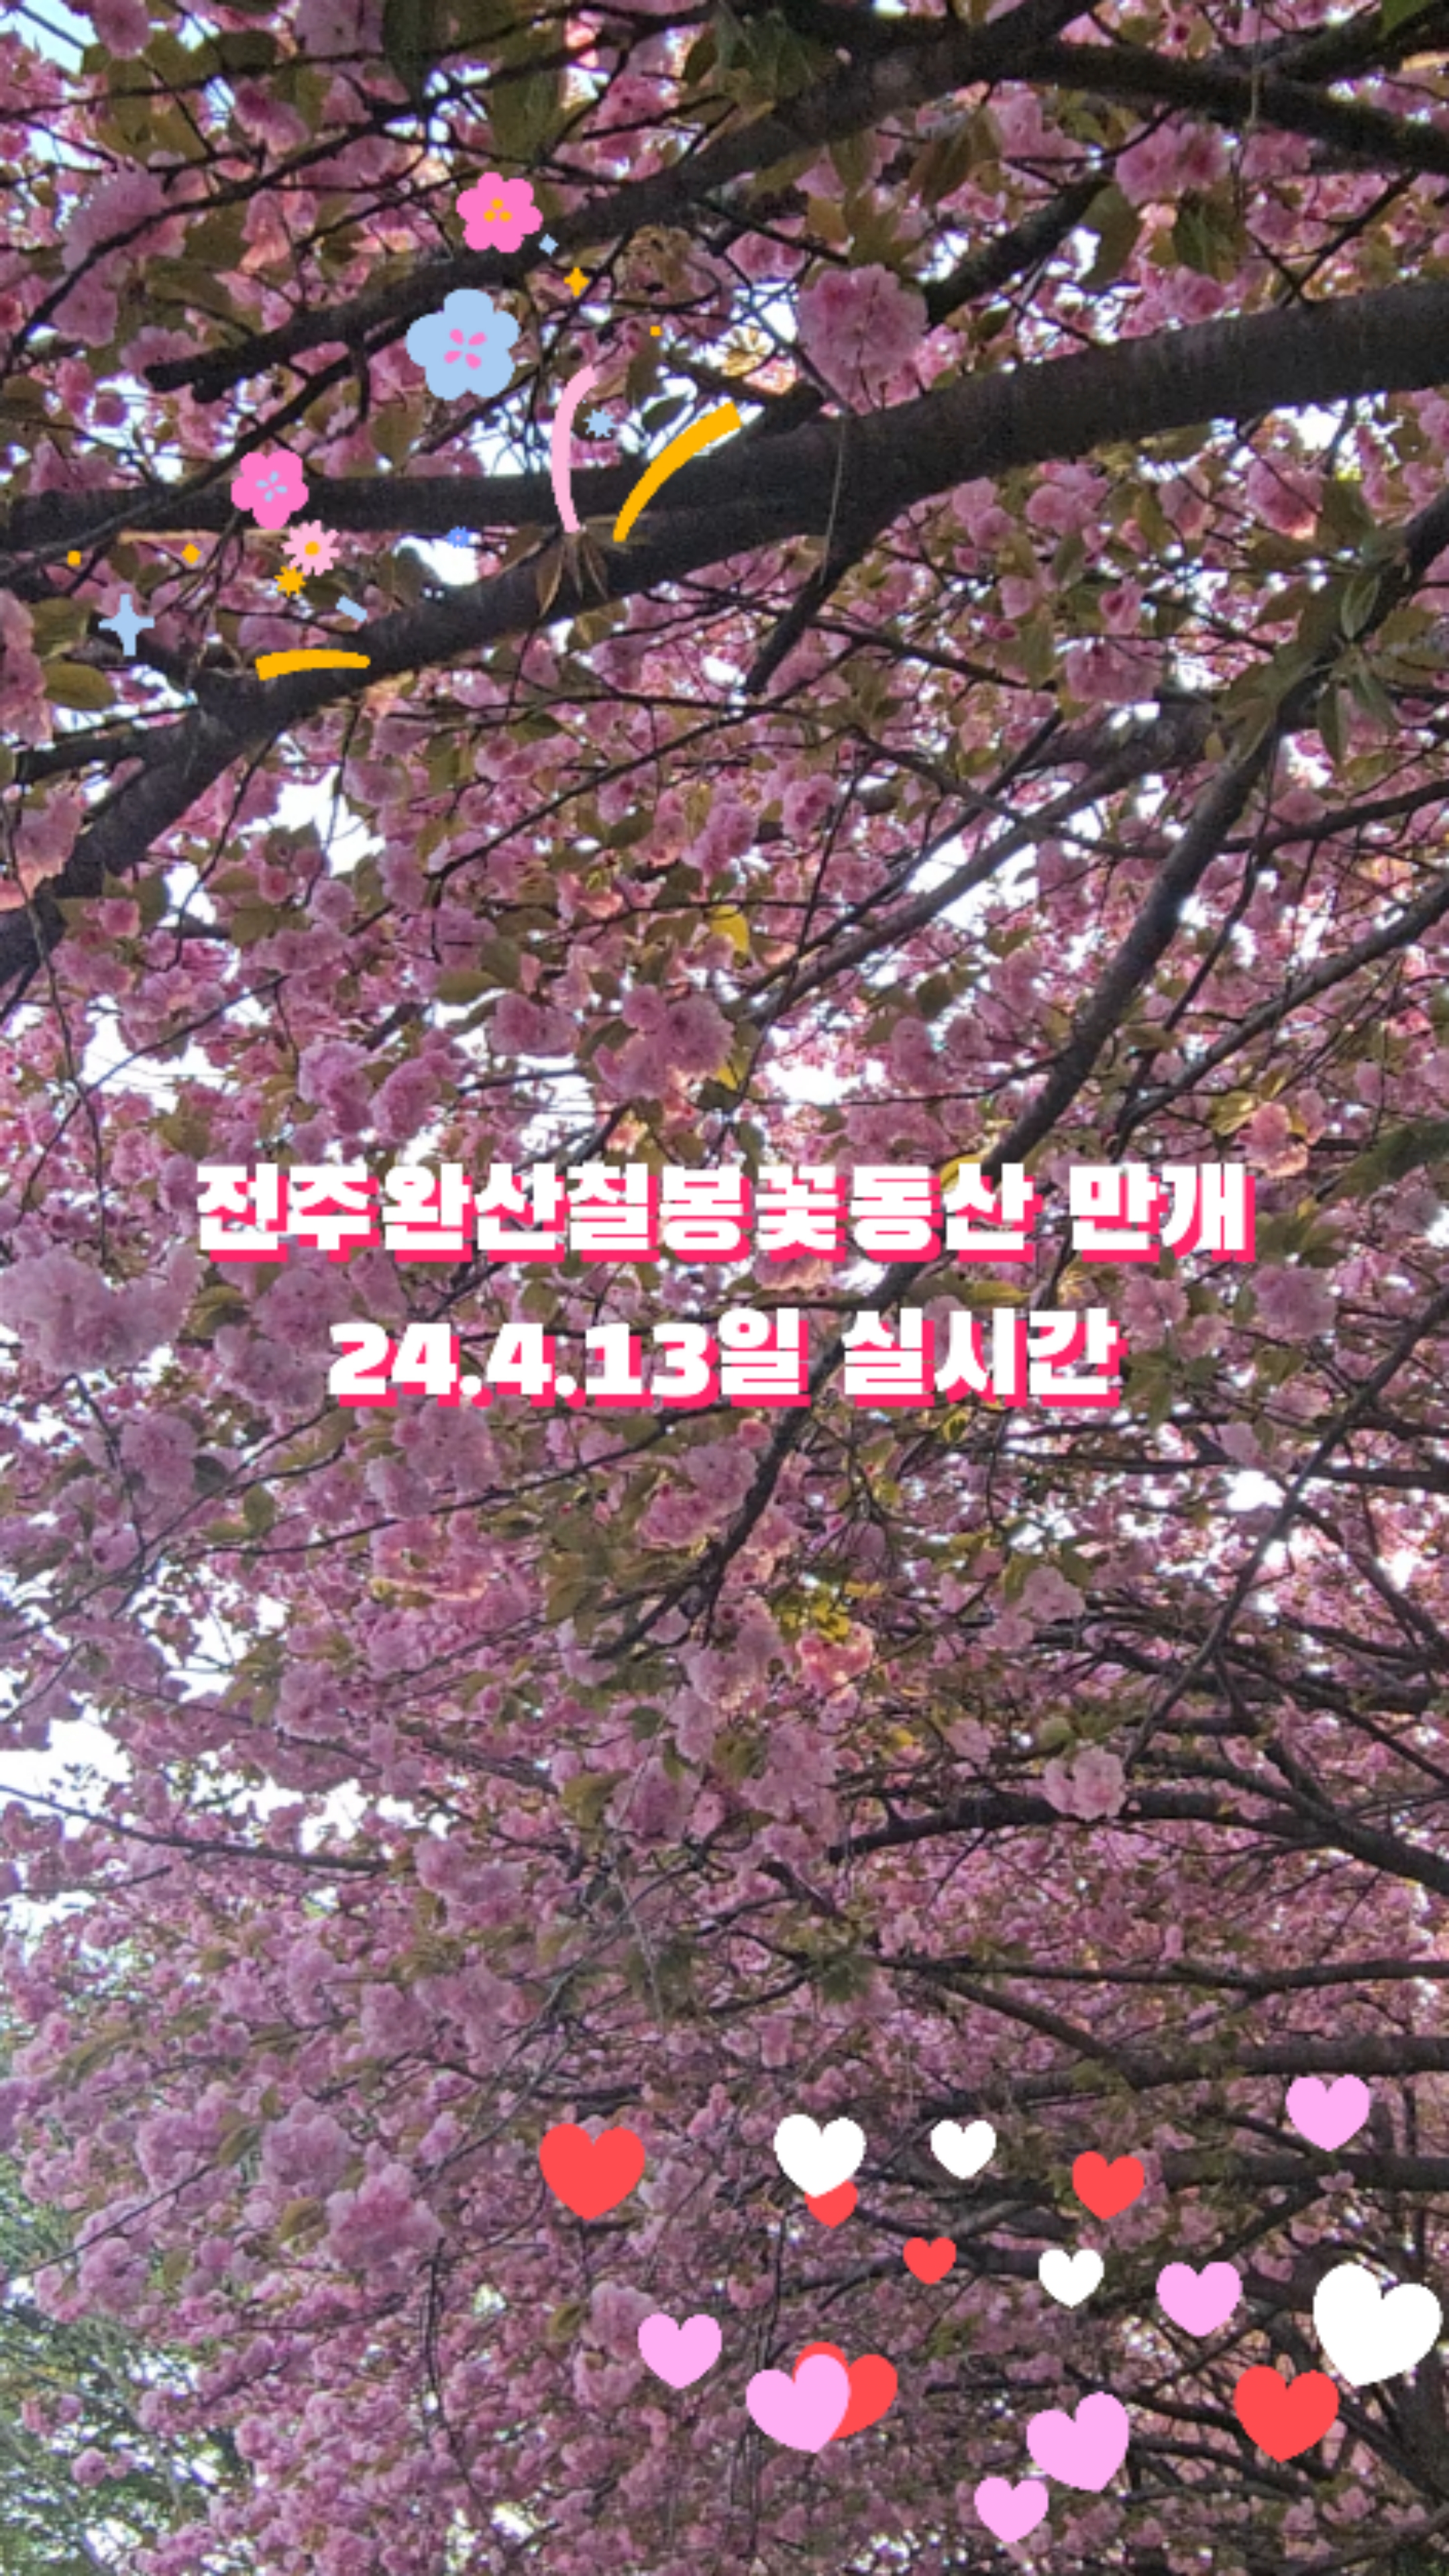 겹벚꽃명소 완산칠봉꽃동산 전주 완산꽃동산 4월13일 실시간